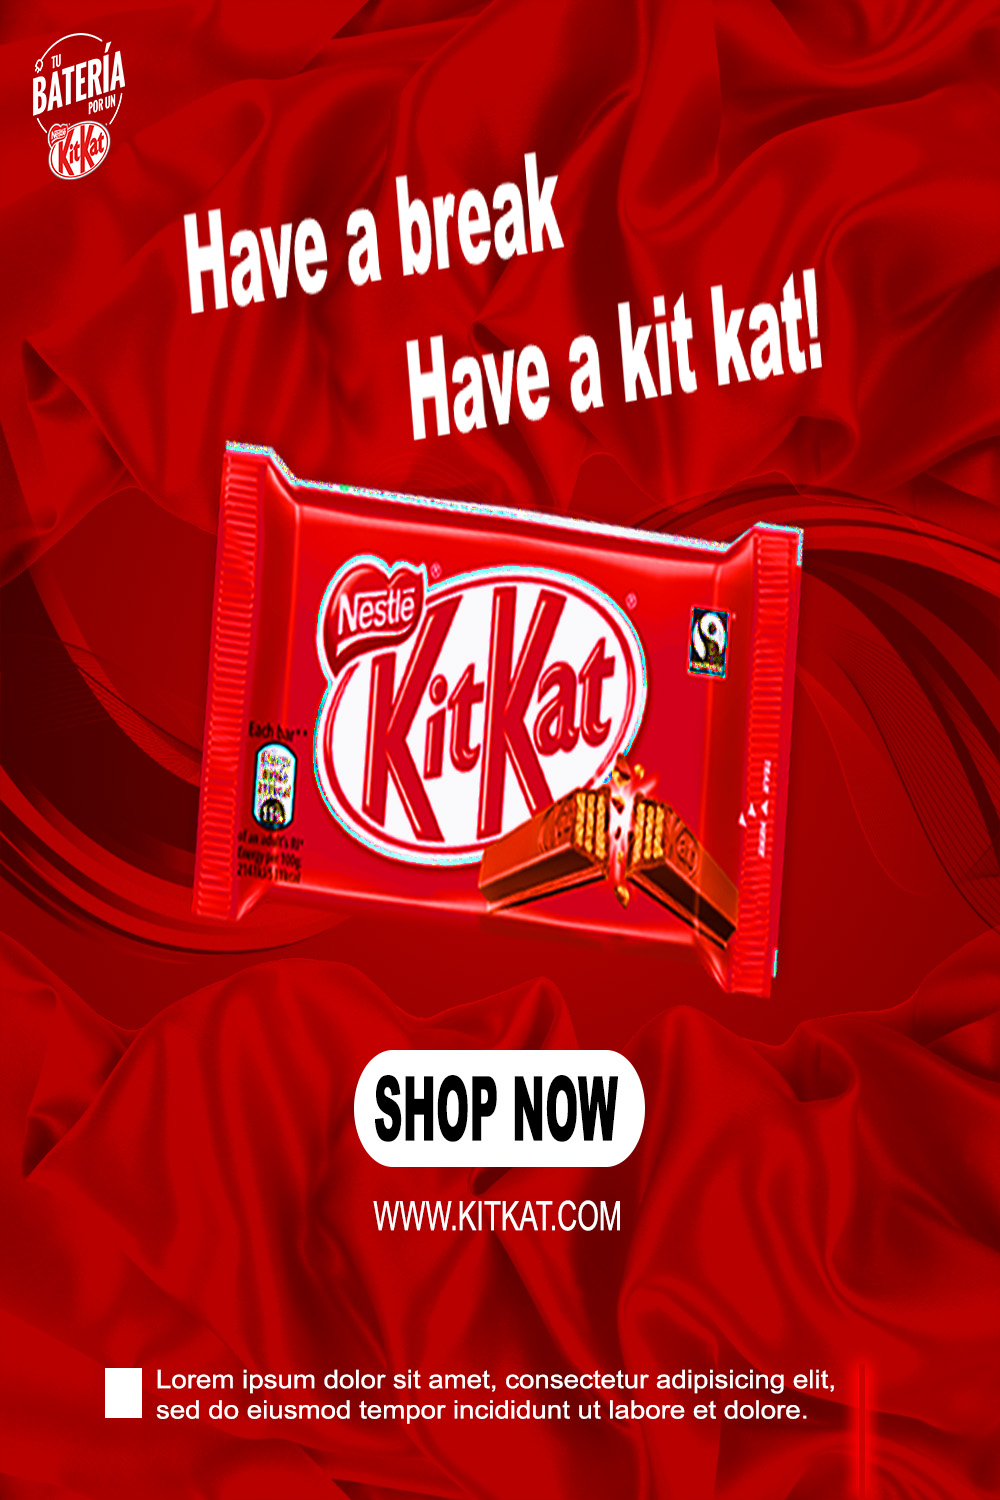 KitKat SOCIAL MEDIA POSTER DESIGN pinterest preview image.